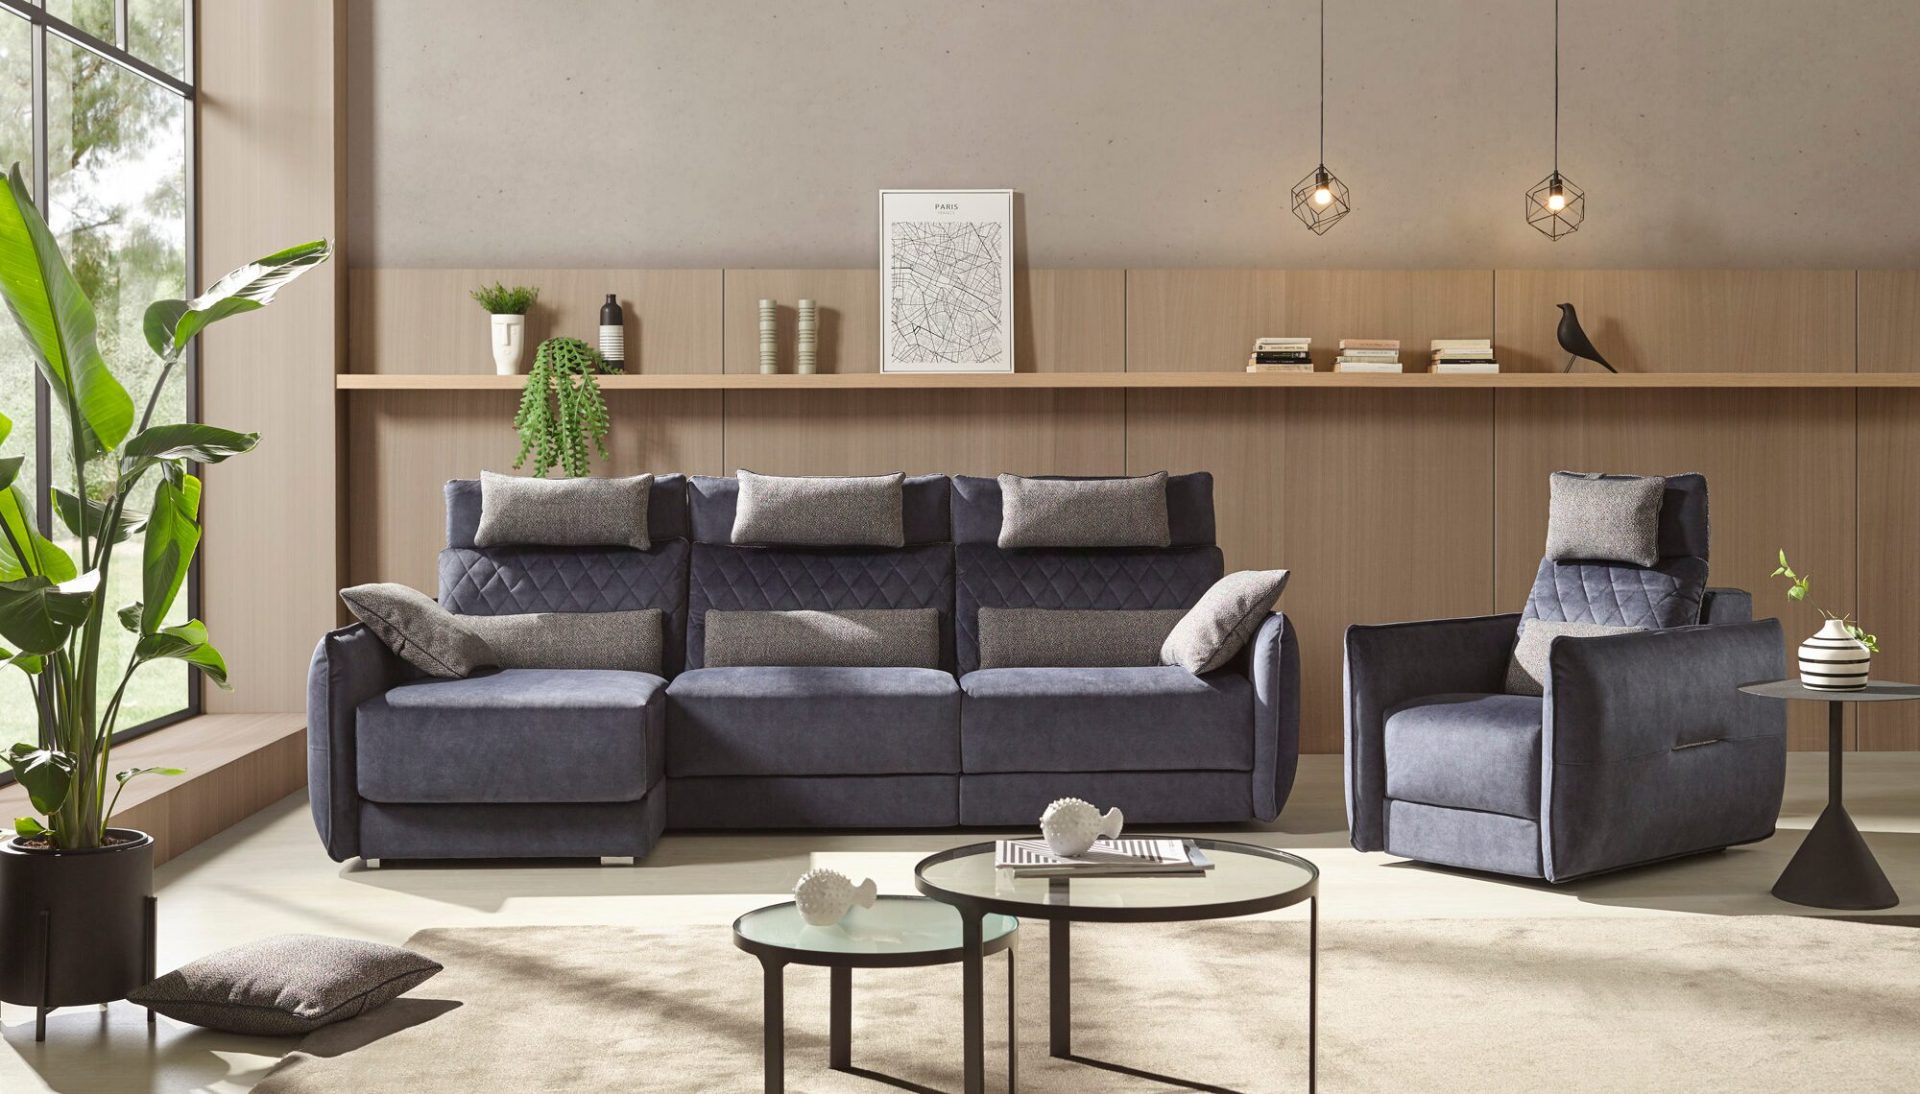 Transforma tu sala en un oasis de serenidad y elegancia, creando un espacio perfecto para el descanso y el buen gusto. Encuentra sofás únicos que realcen la armonía de tu hogar.